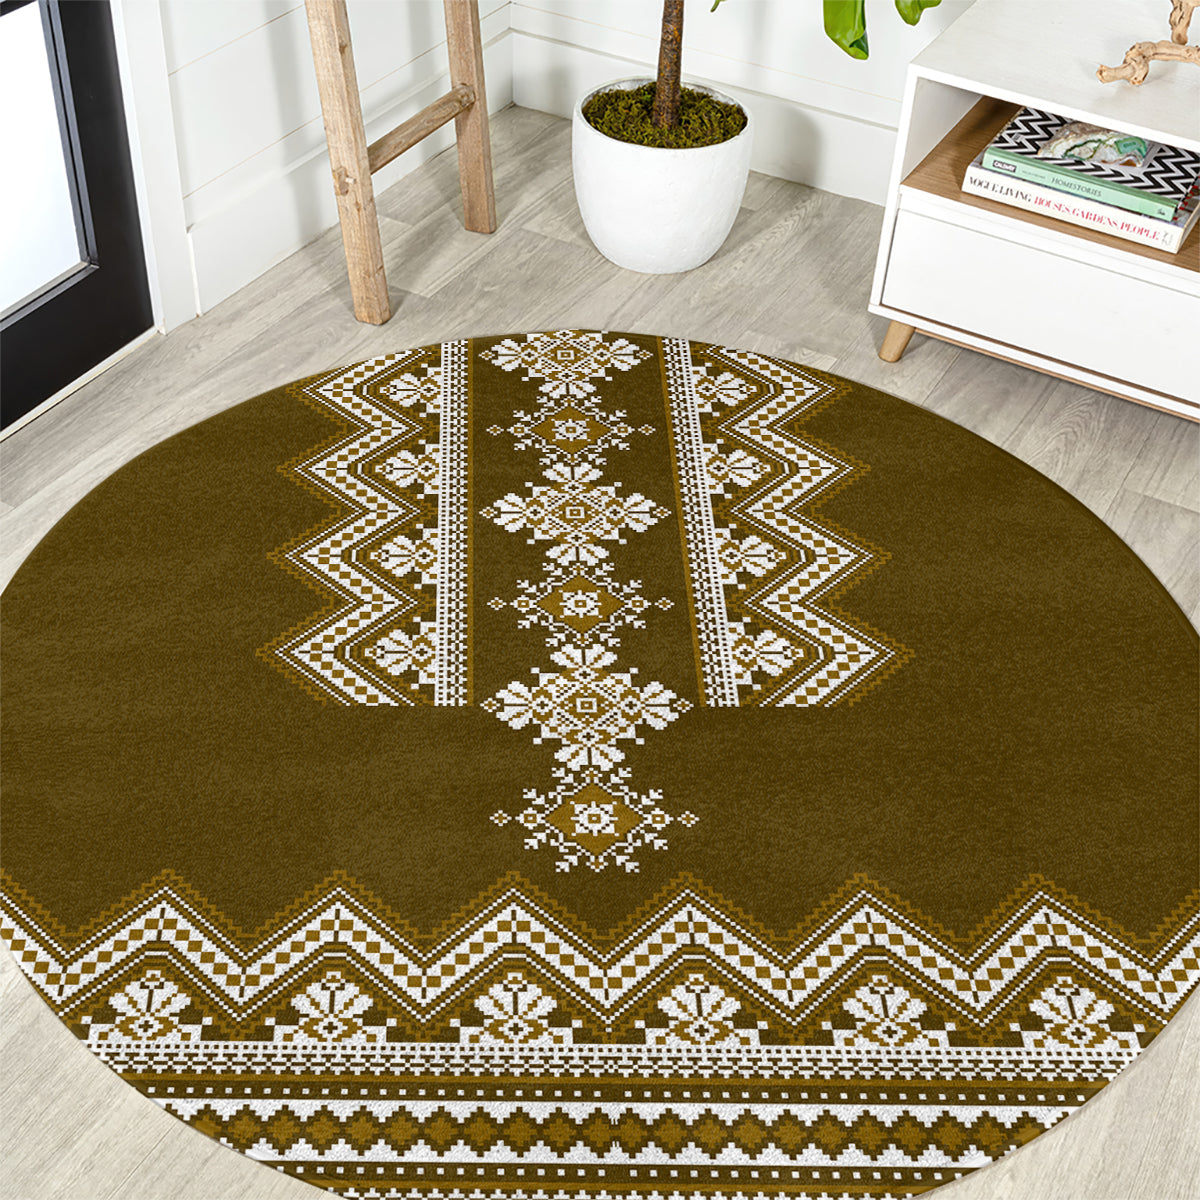 ukraine-folk-pattern-round-carpet-ukrainian-wood-brown-version